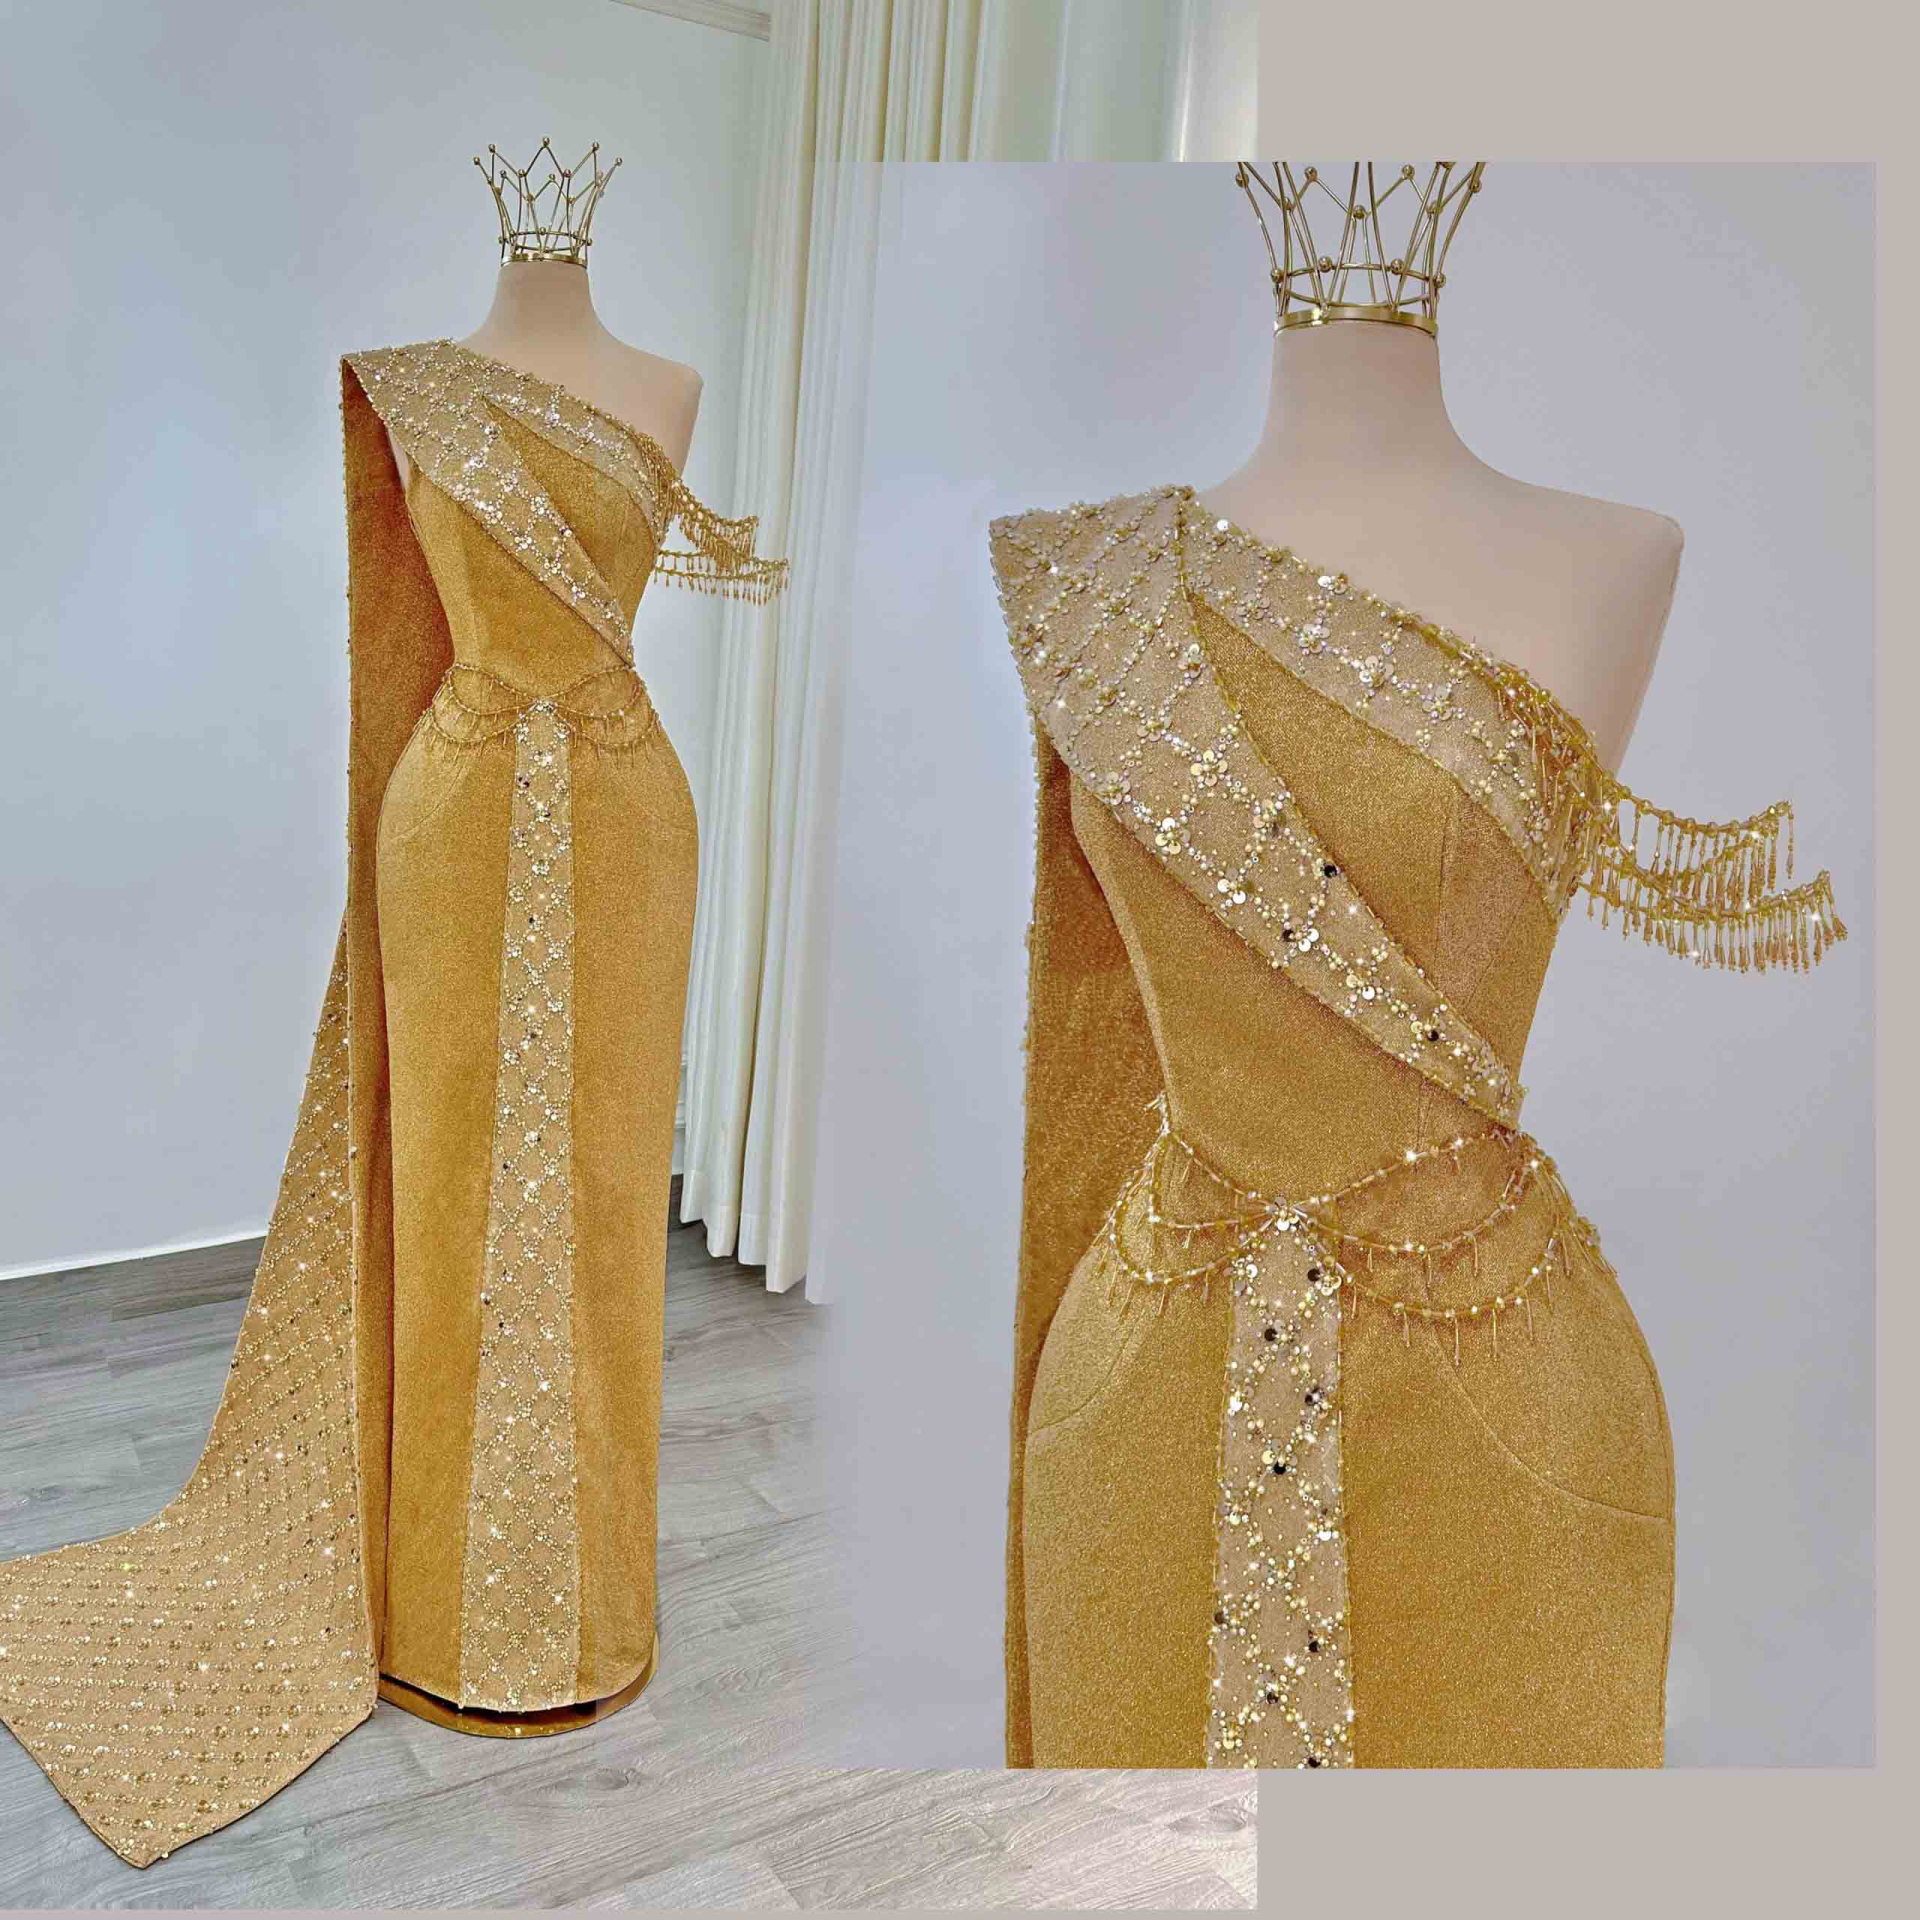 Chiếc đầm dạ hội màu vàng lấy cảm hứng từ trang phục truyền thống của phụ nữ Thái Lan với một mảnh lụa dài quấn một đường chéo trước ngực, đưa ra sau lưng, hướng về phần hông.